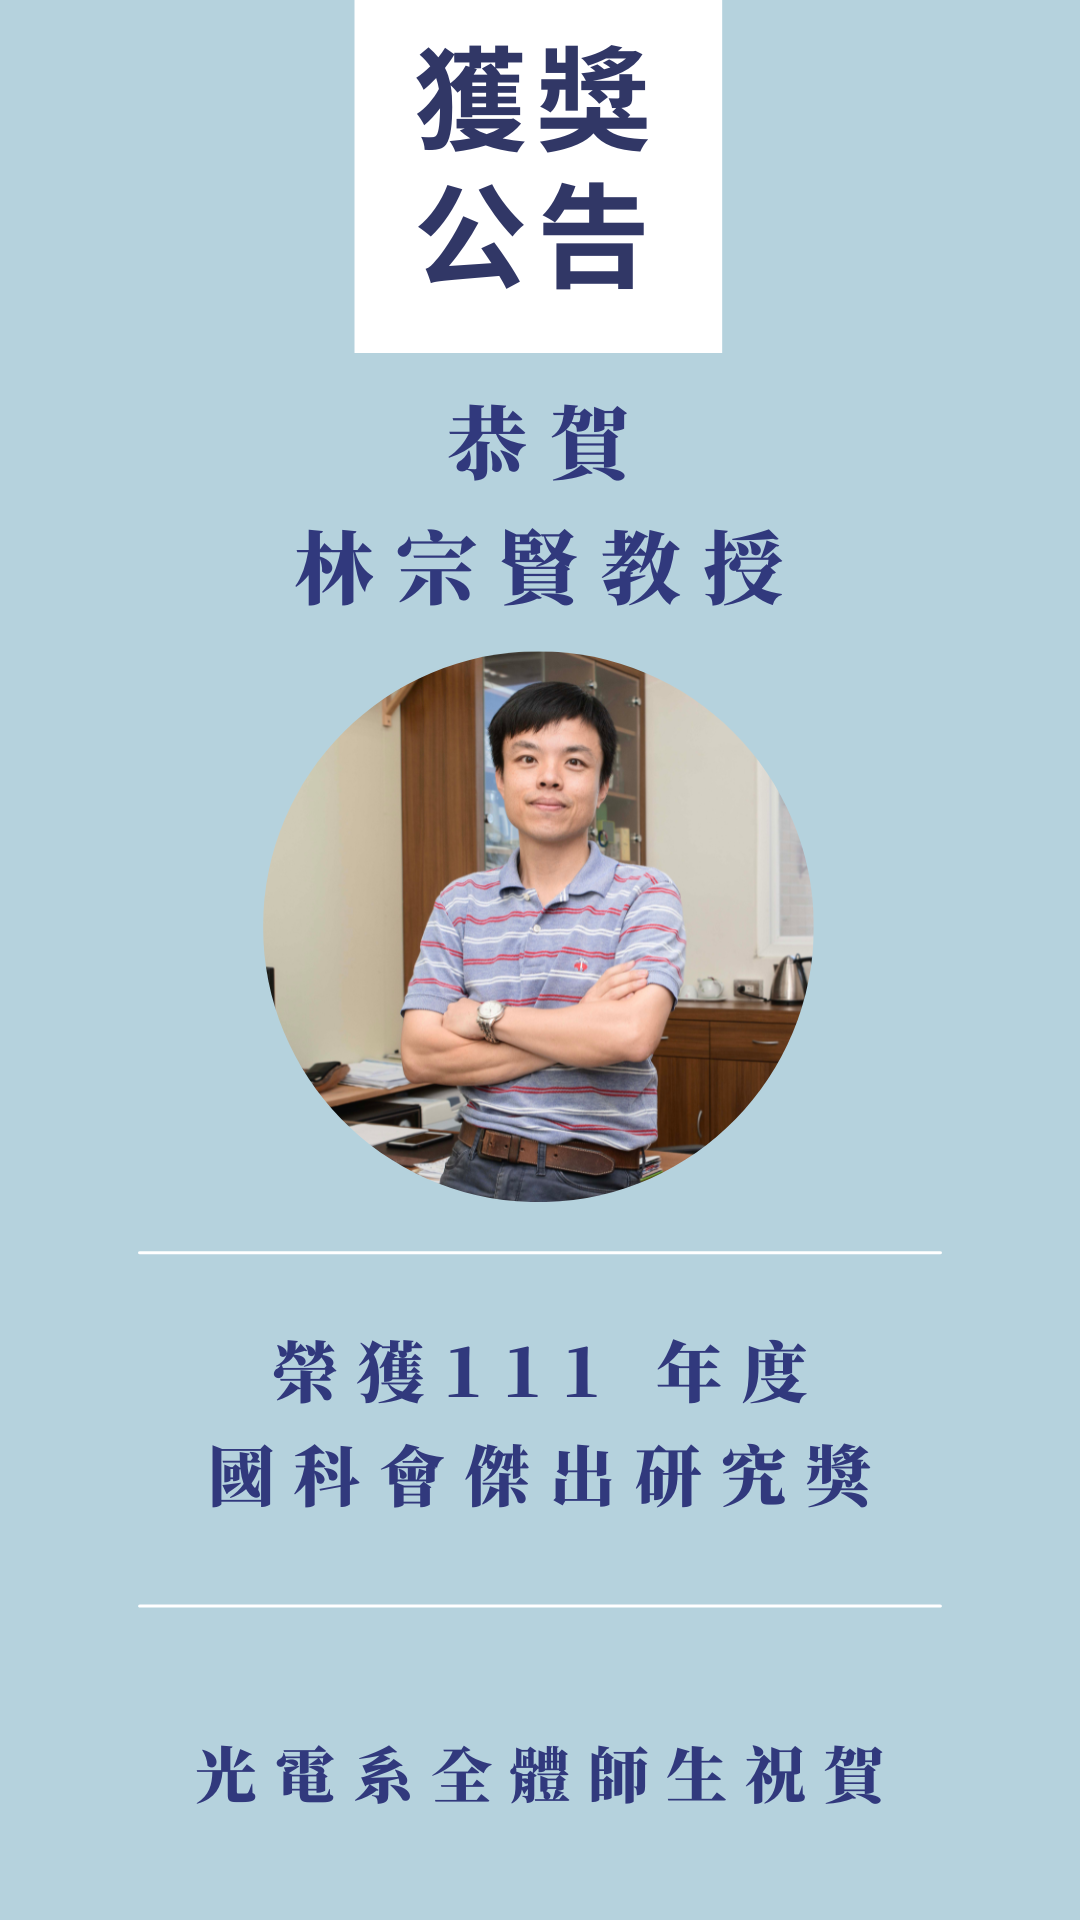 林宗賢教授榮獲111年度國科會傑出研究獎